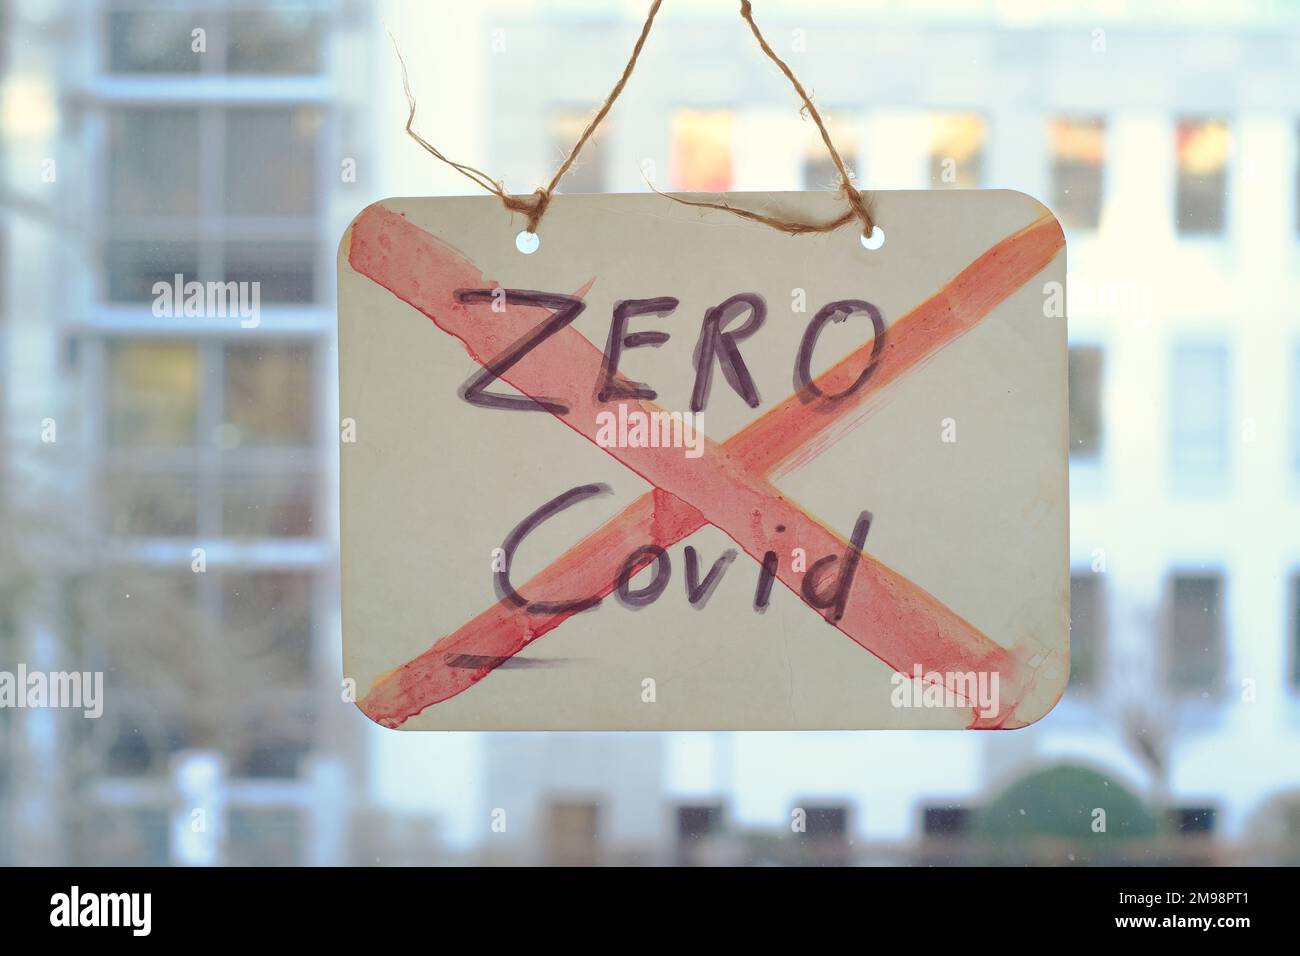 Fine Zero covid policy sign on window, uffici edifici sul retro Foto Stock